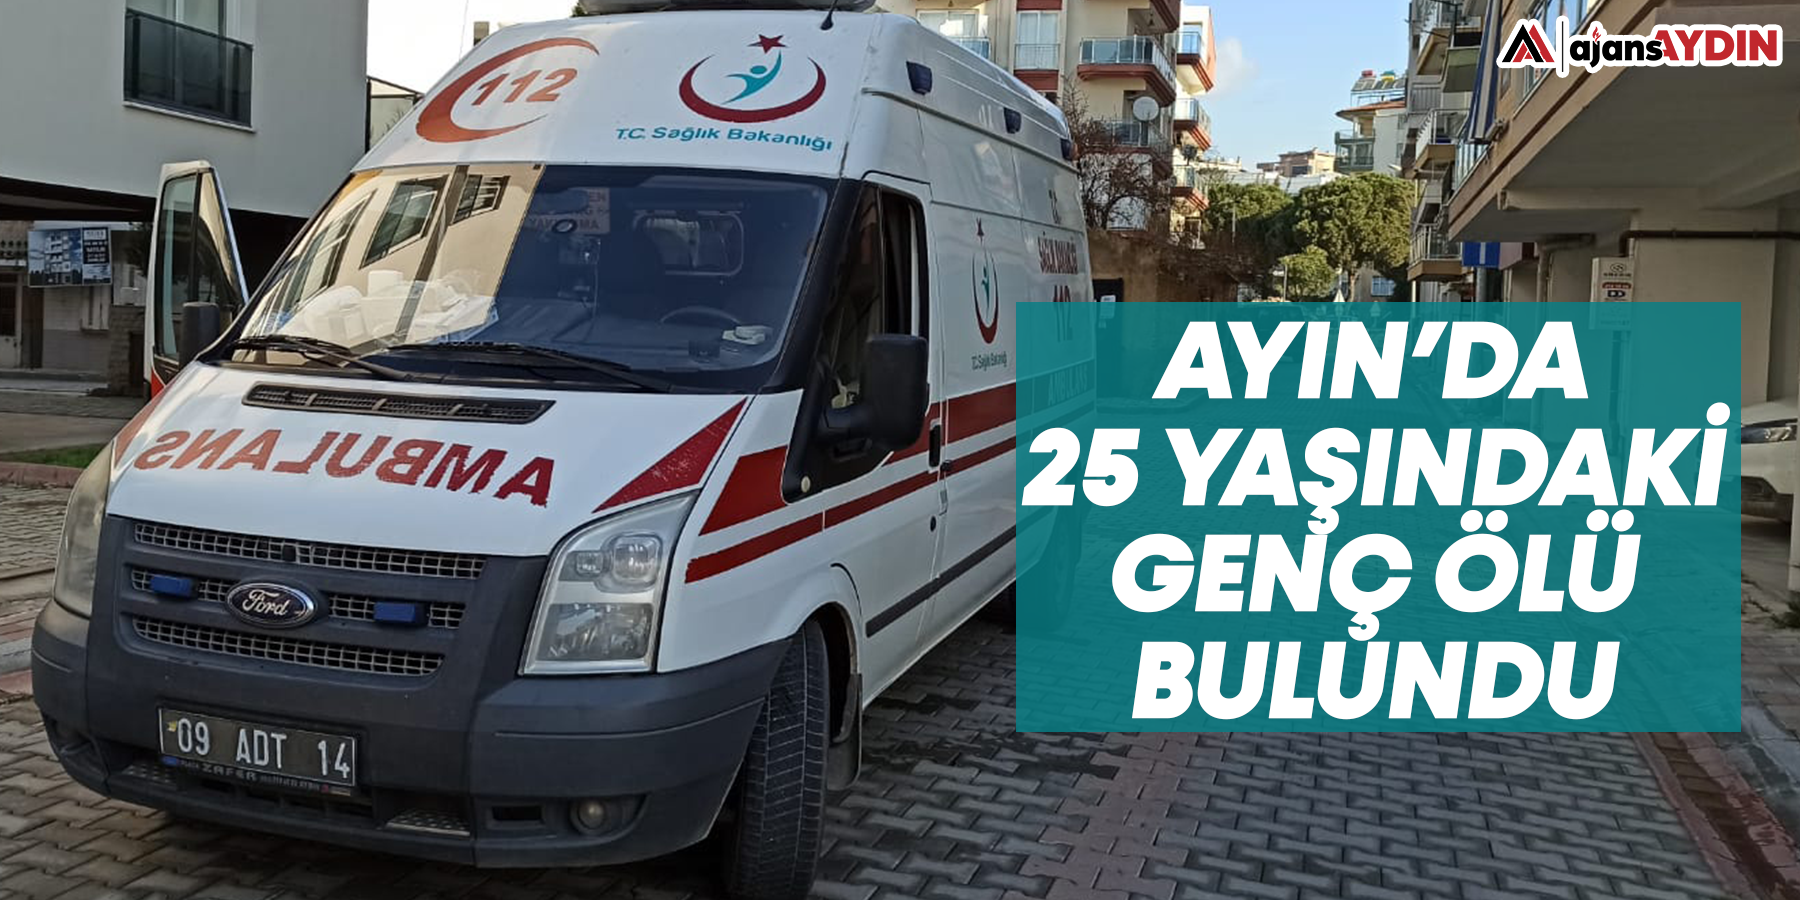 Aydın'da 25 yaşındaki genç ölü bulundu